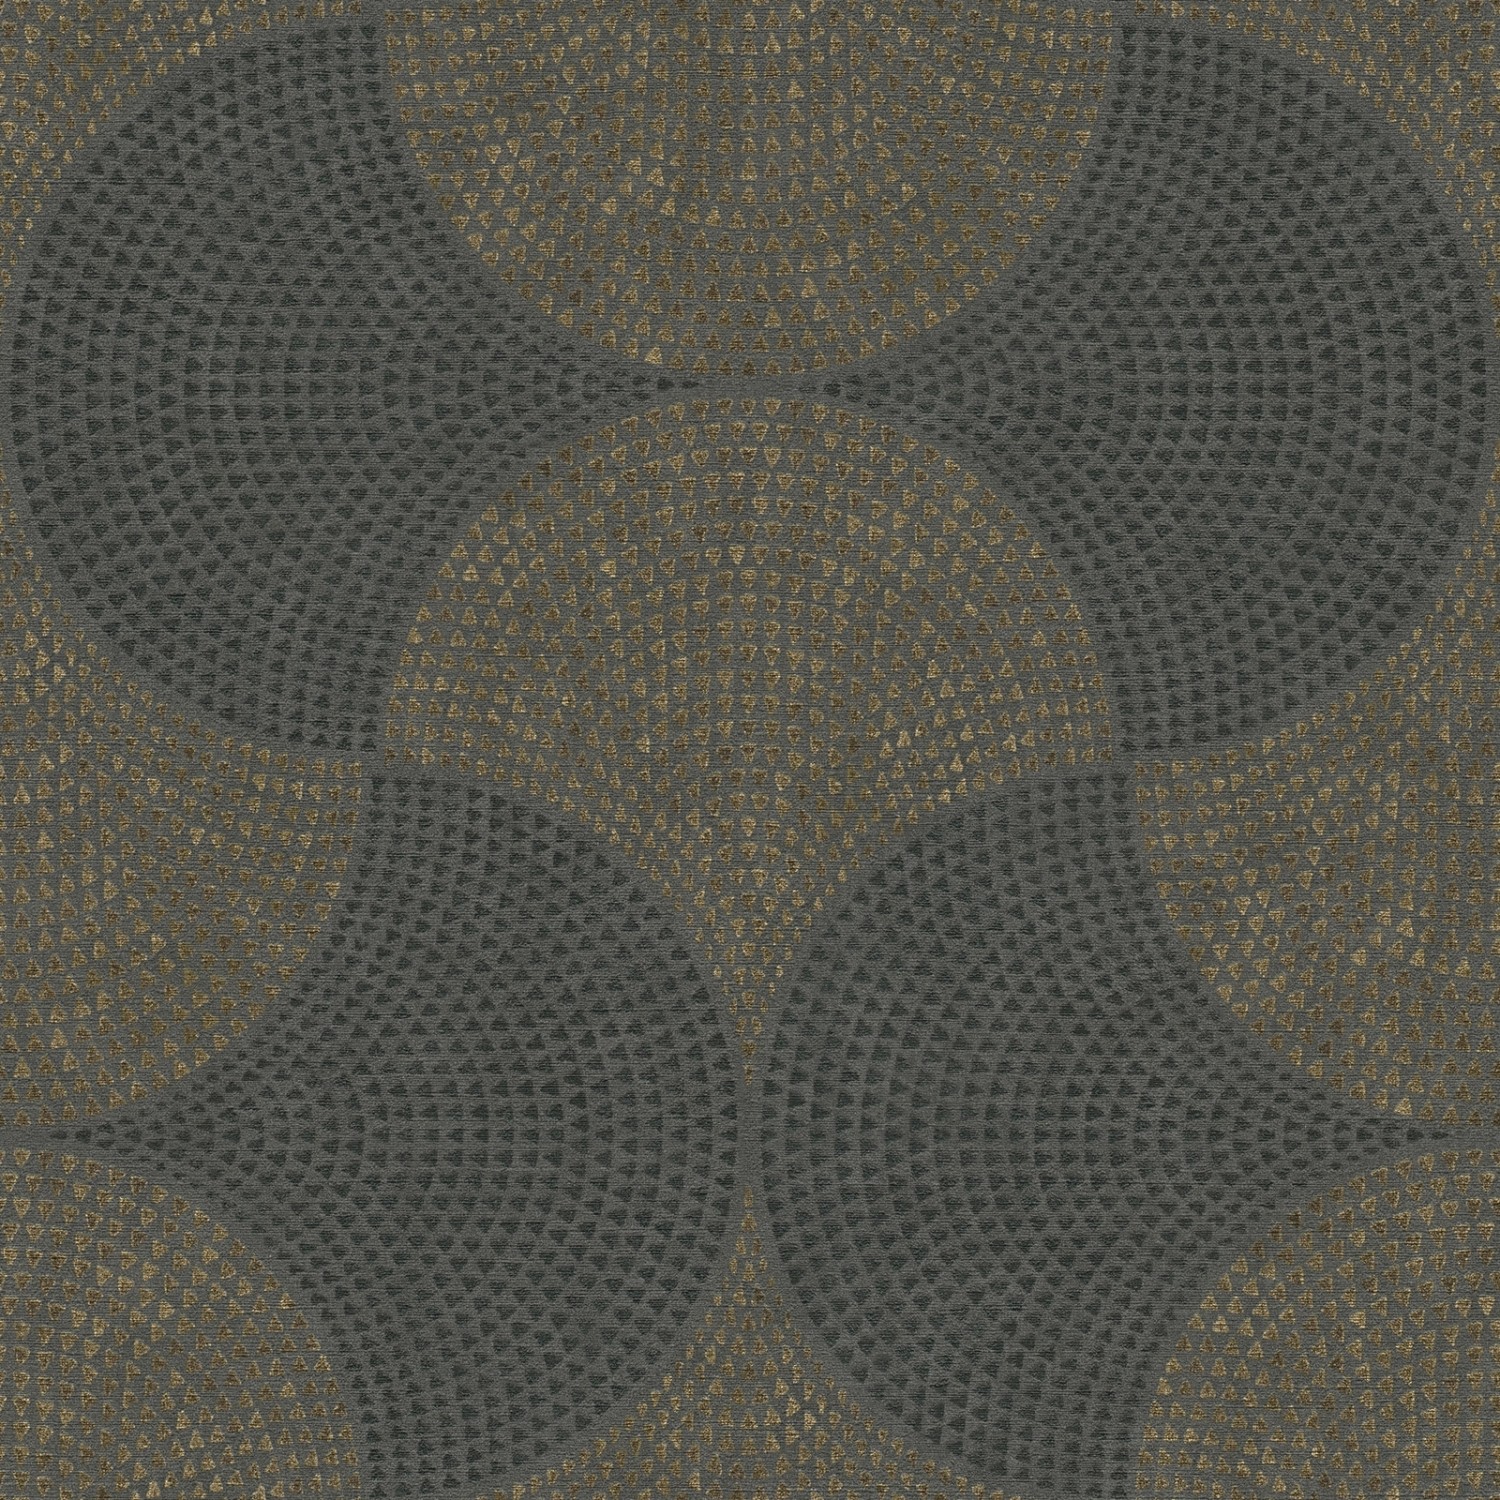 Bricoflor Mosaik Tapete im Ethno Chic Afrikanische Muster Vliestapete in Braun Gold Schwarz Elegante Vlies Wandtapete Geometrisch für Wohnzimmer von Bricoflor